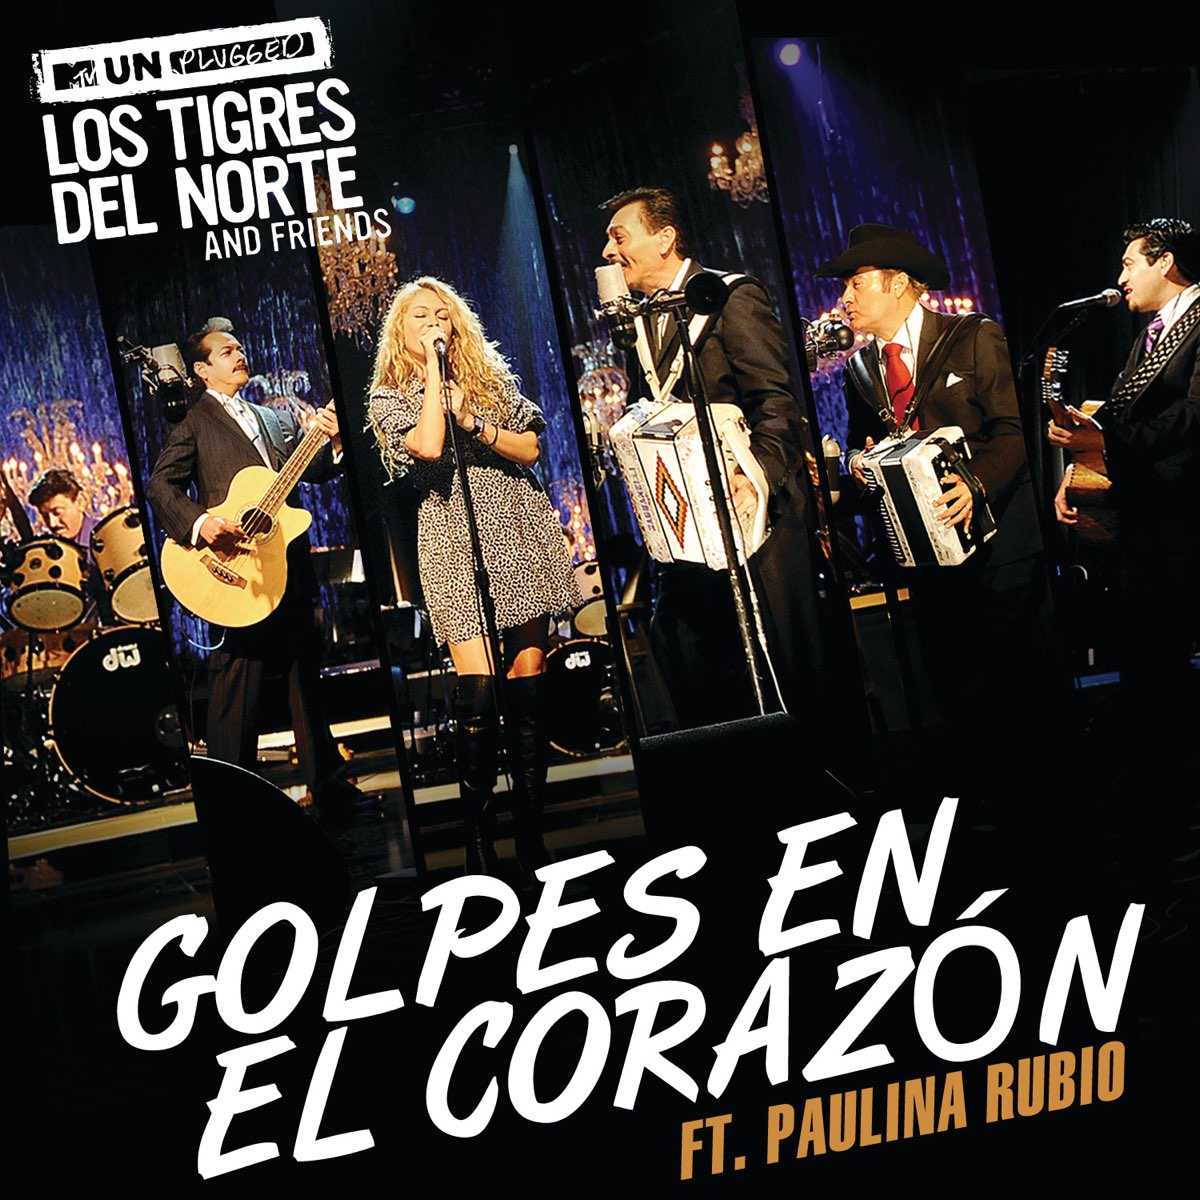 Los Tigres del Norte featuring Paulina Rubio — Golpes En El Corazón cover artwork